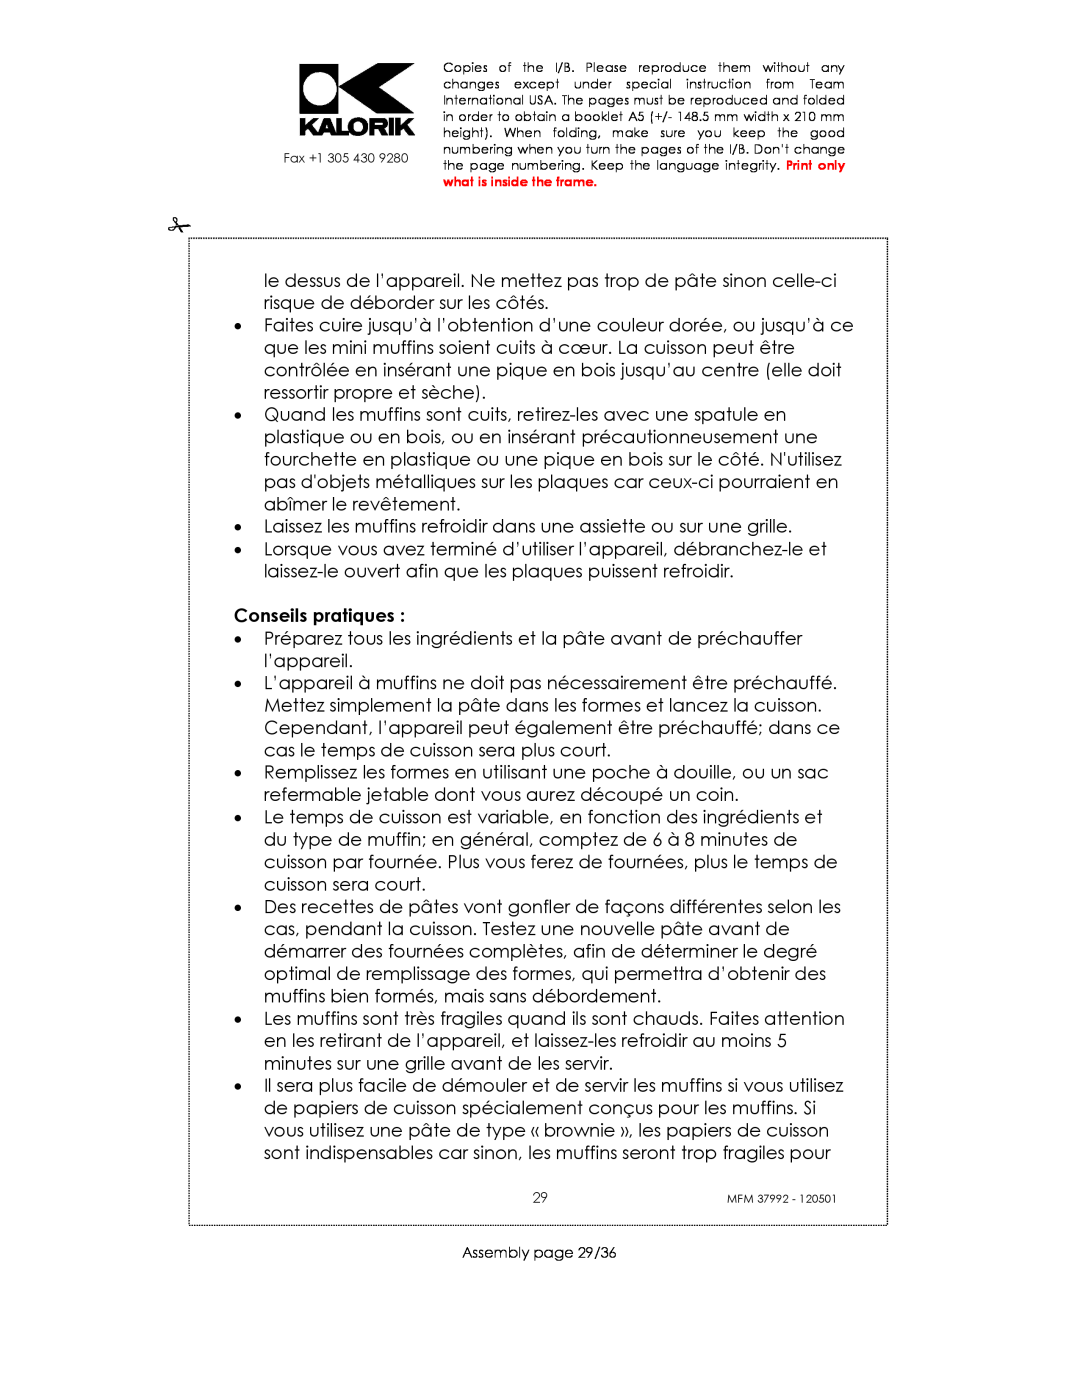 Kalorik MFM 37992 manual Conseils pratiques, Assembly page 29/36 